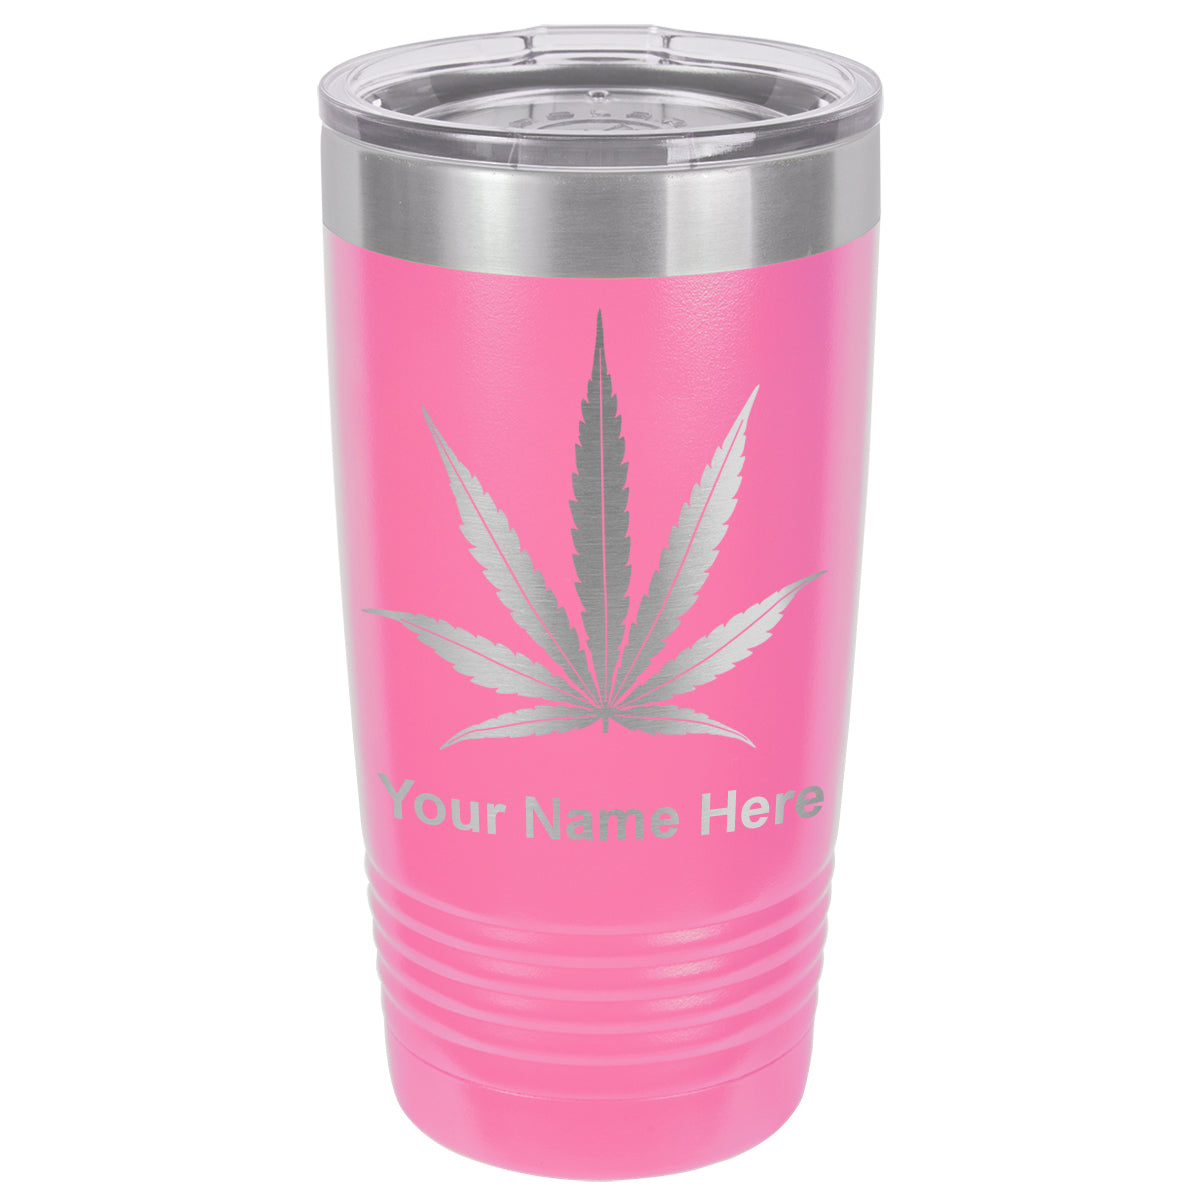 20oz Vacuum Insulated Tumbler Mug, Marijuana leaf, Personalized Engraving Included